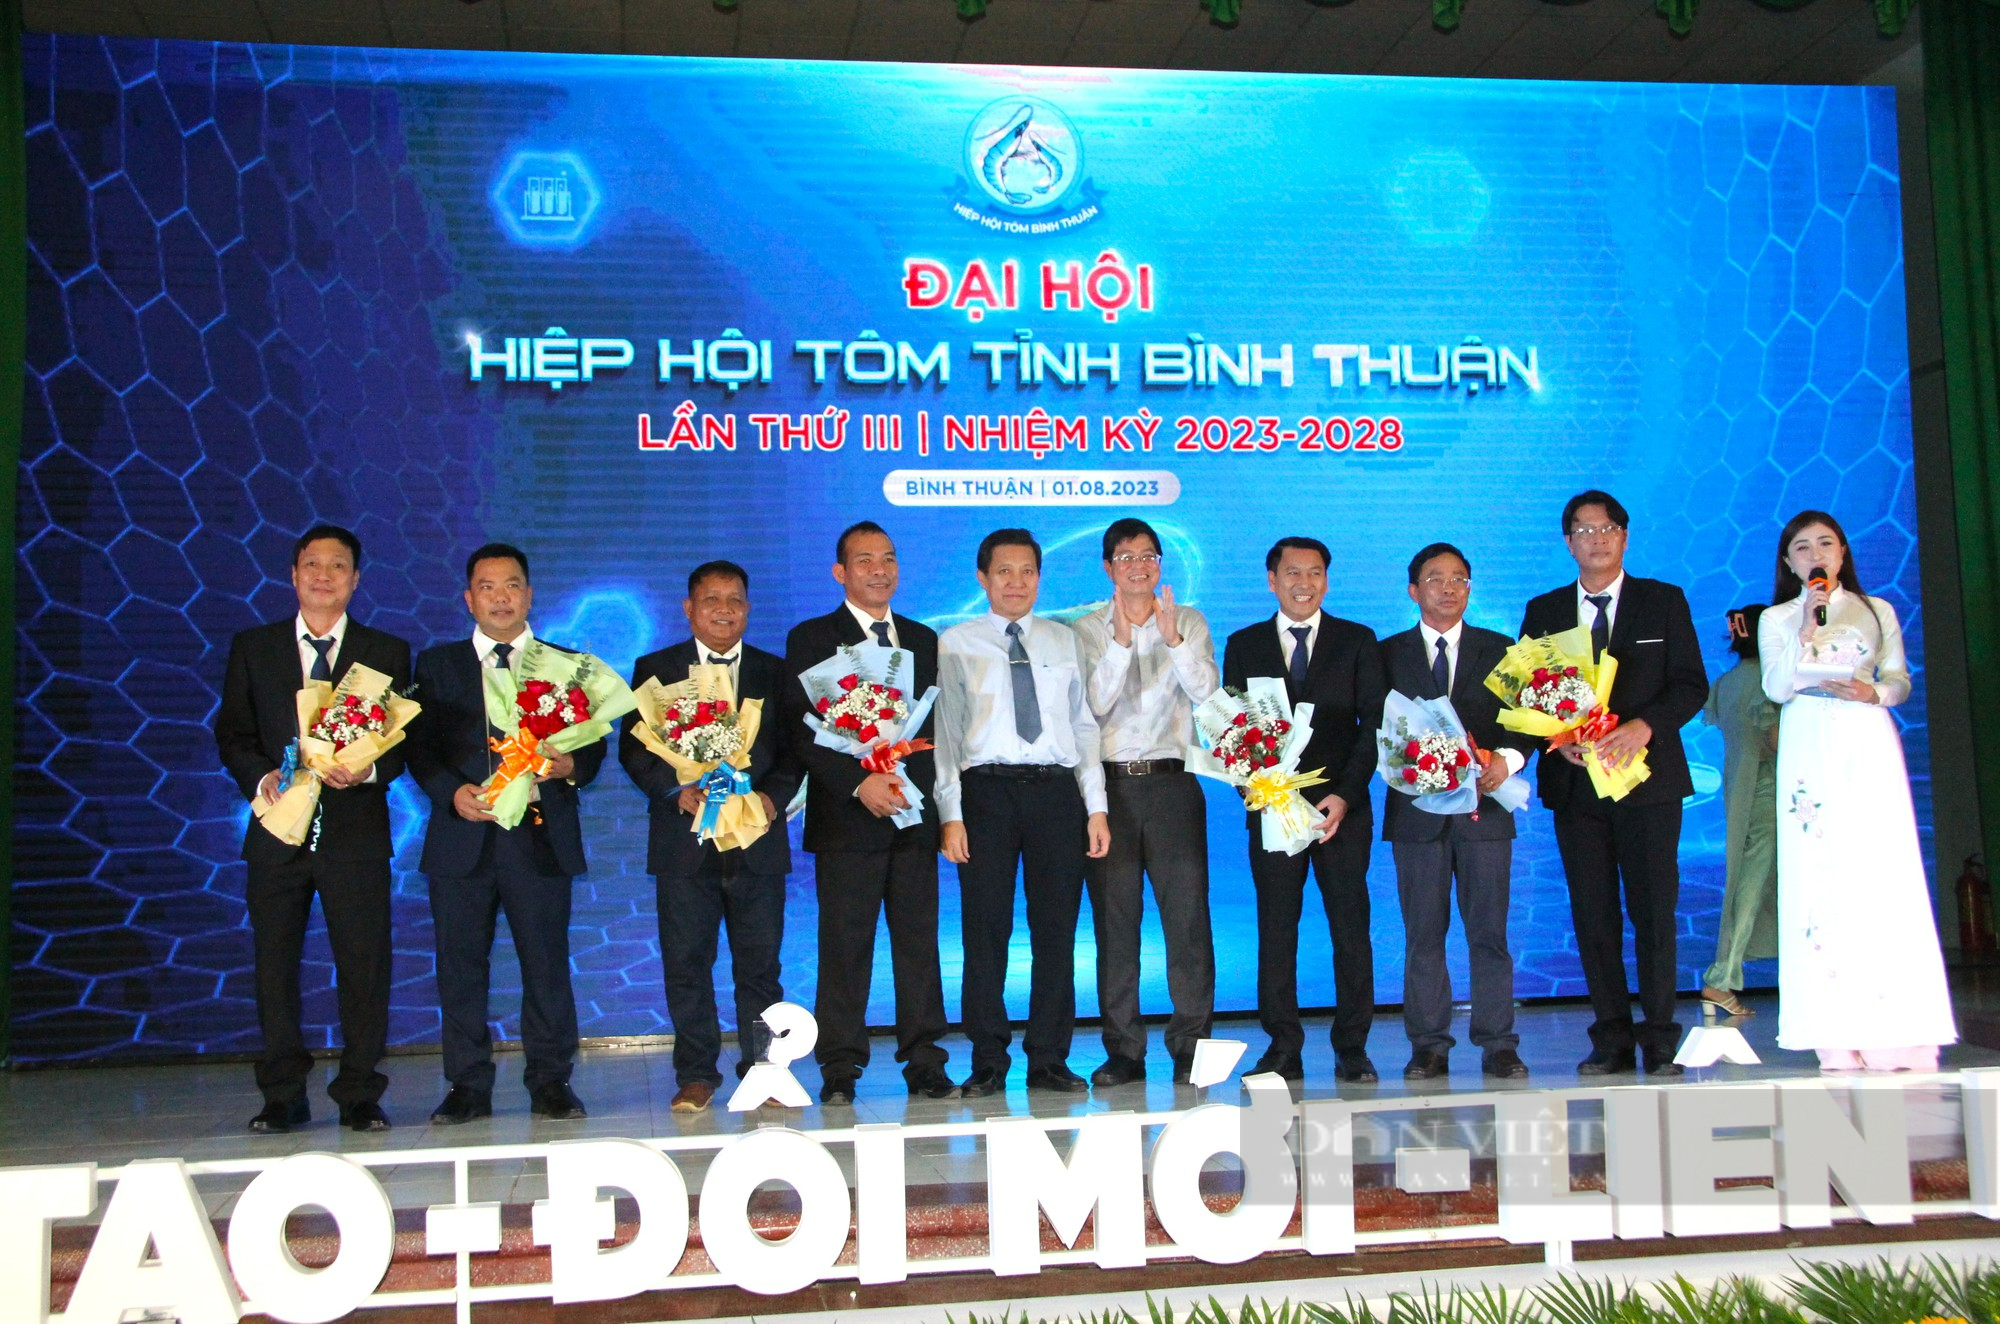 Tôm giống Bình Thuận khẳng định chất lượng, cung cấp 20% thị trường tôm giống cả nước - Ảnh 5.